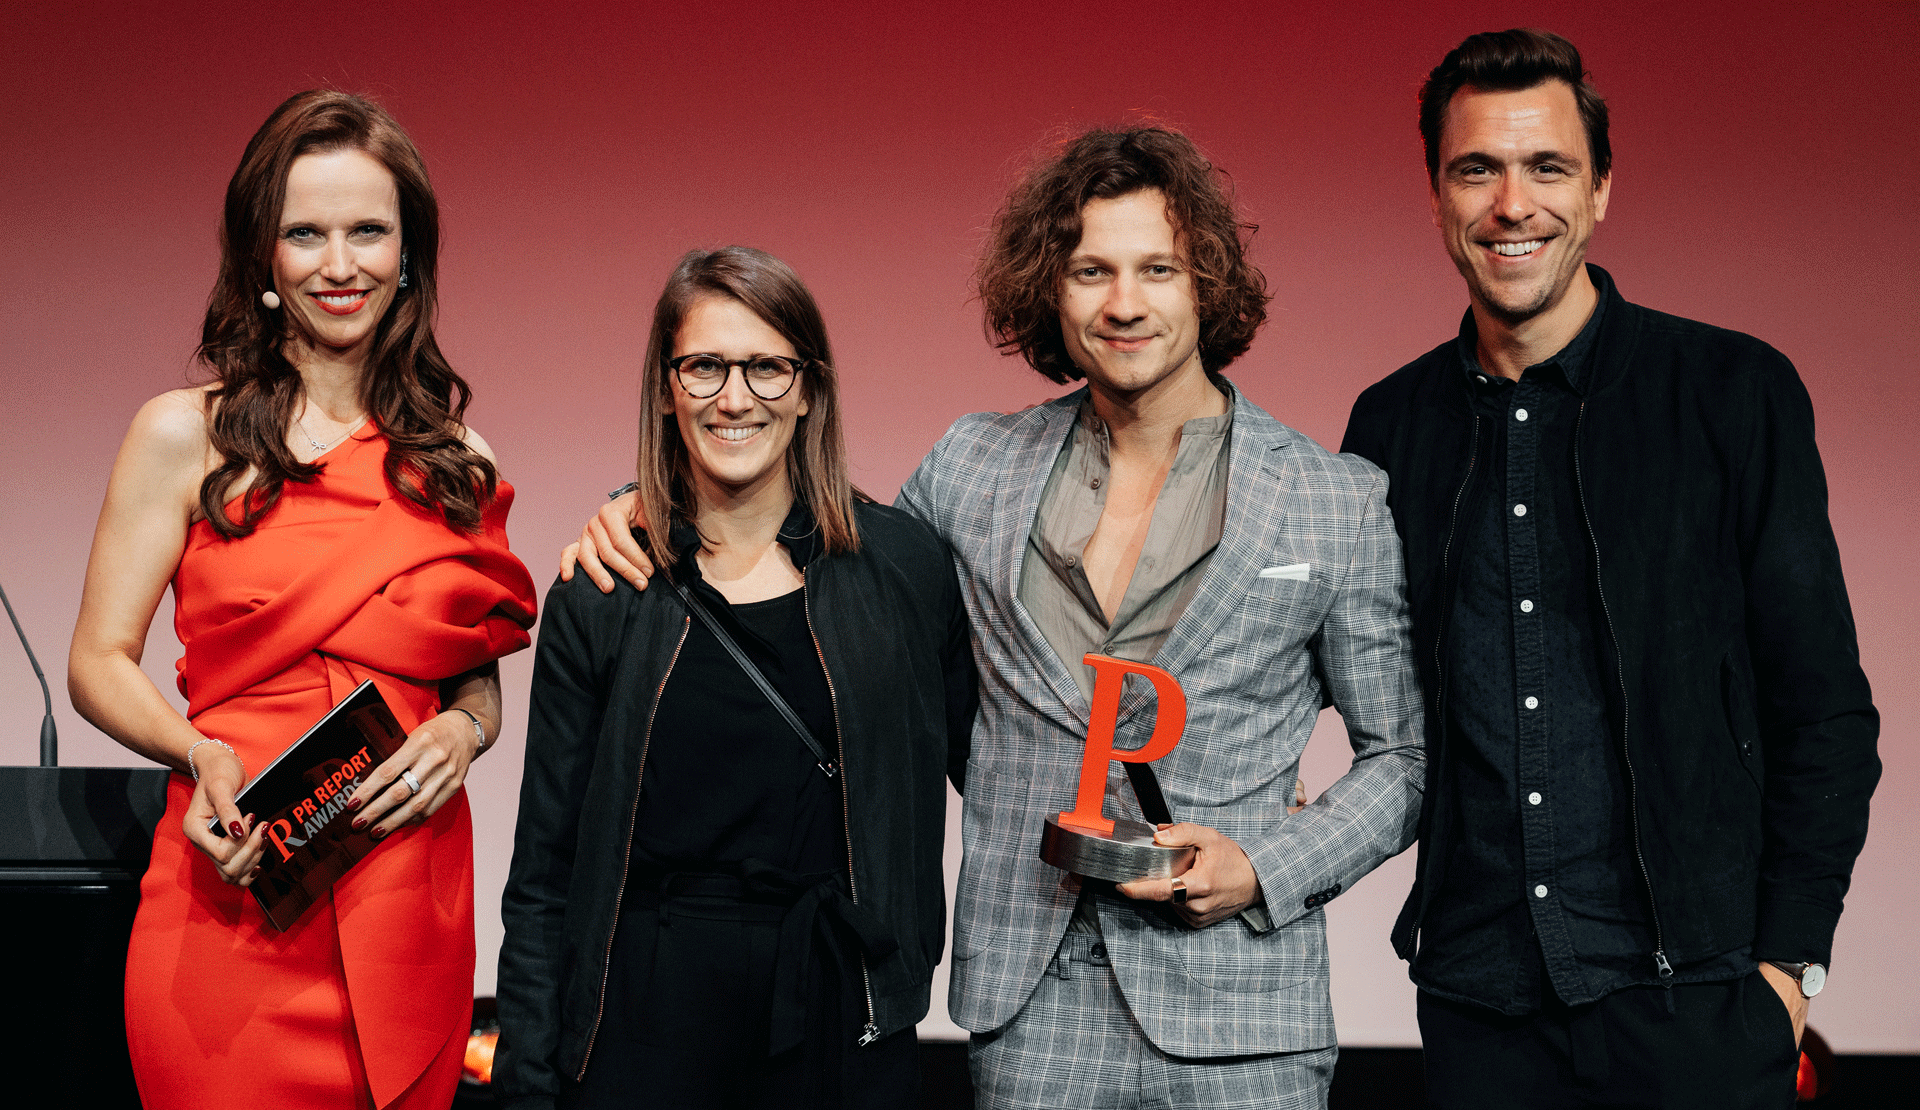 Vollpension und Grayling gleich doppelt beim deutschen PR Report Award 2022 ausgezeichnet